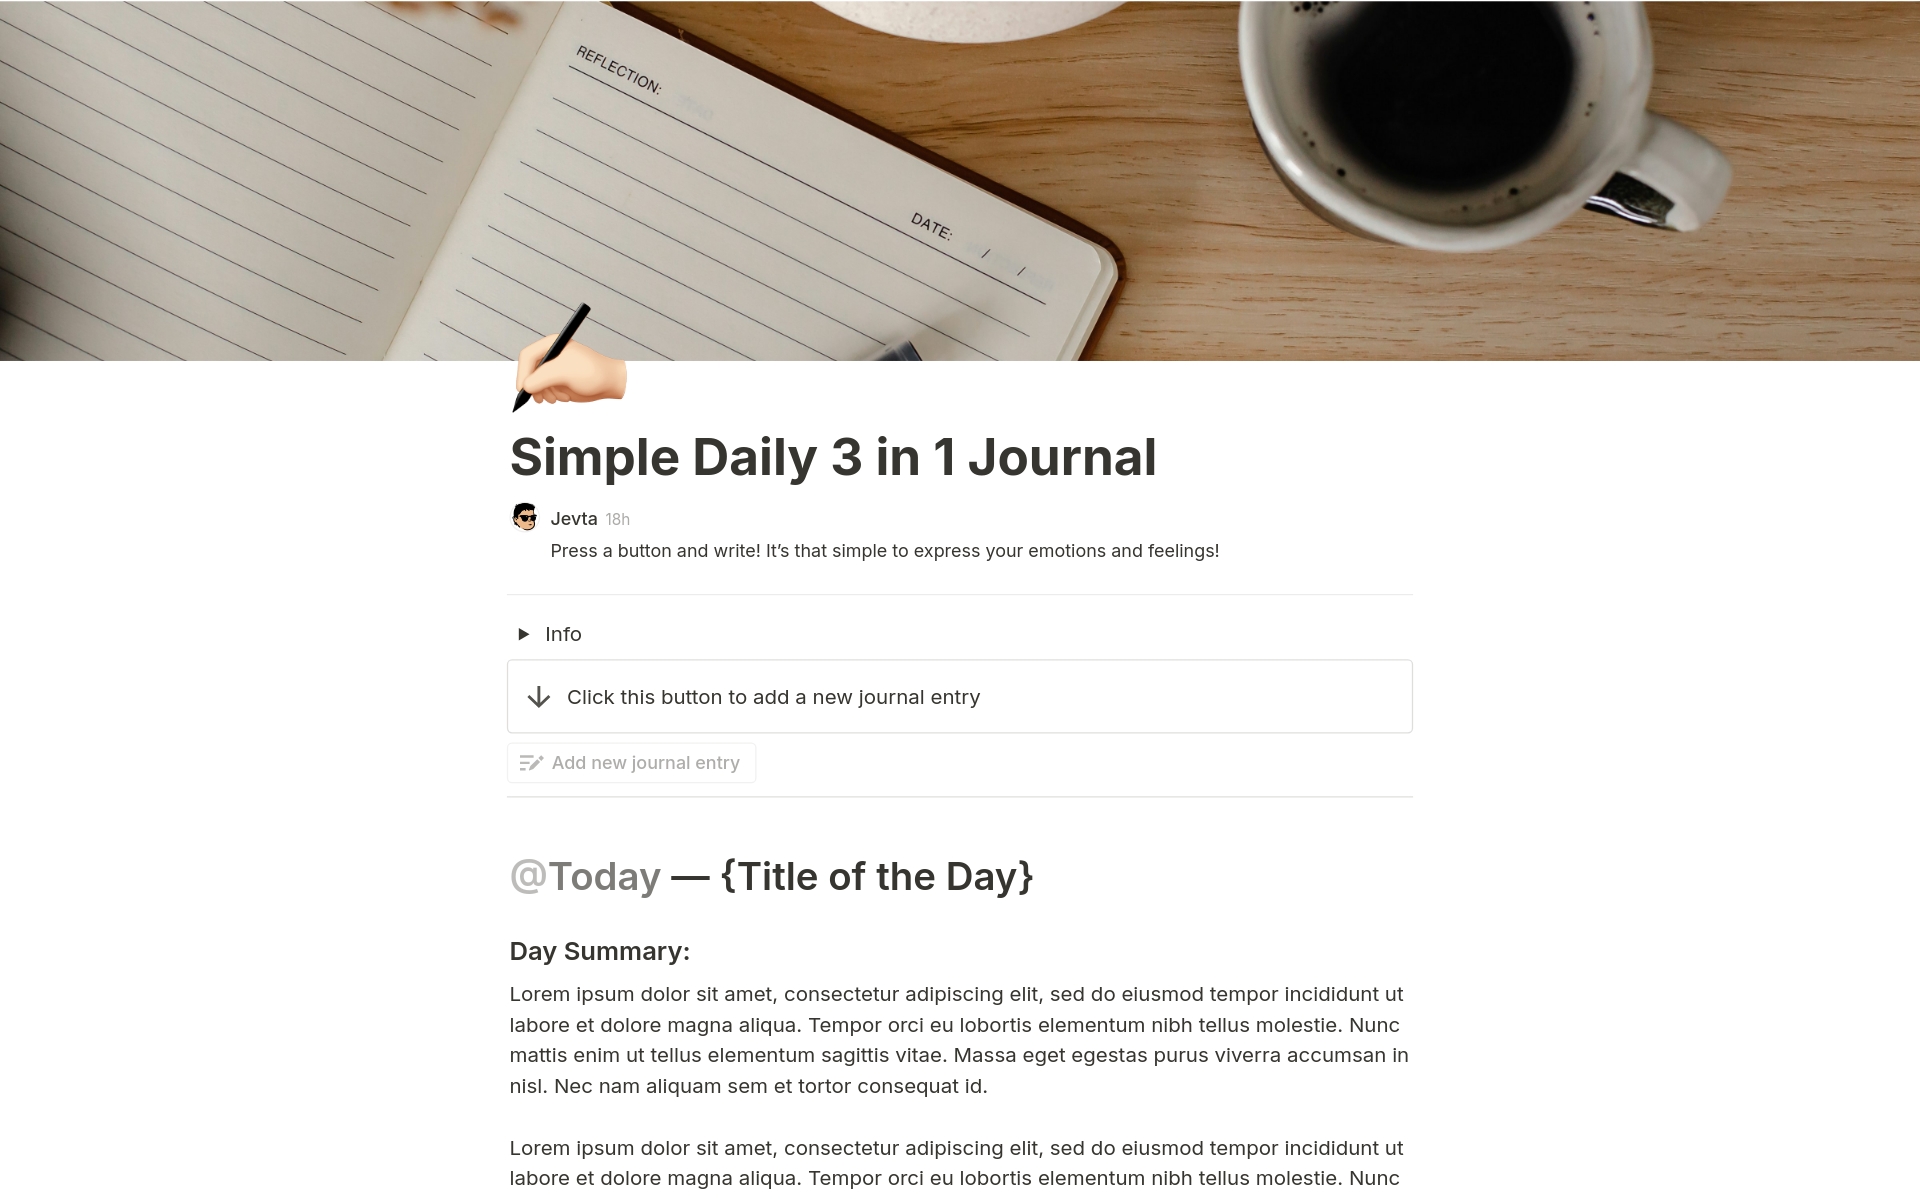 Uma prévia do modelo para Simple Daily 3 in 1 Journal